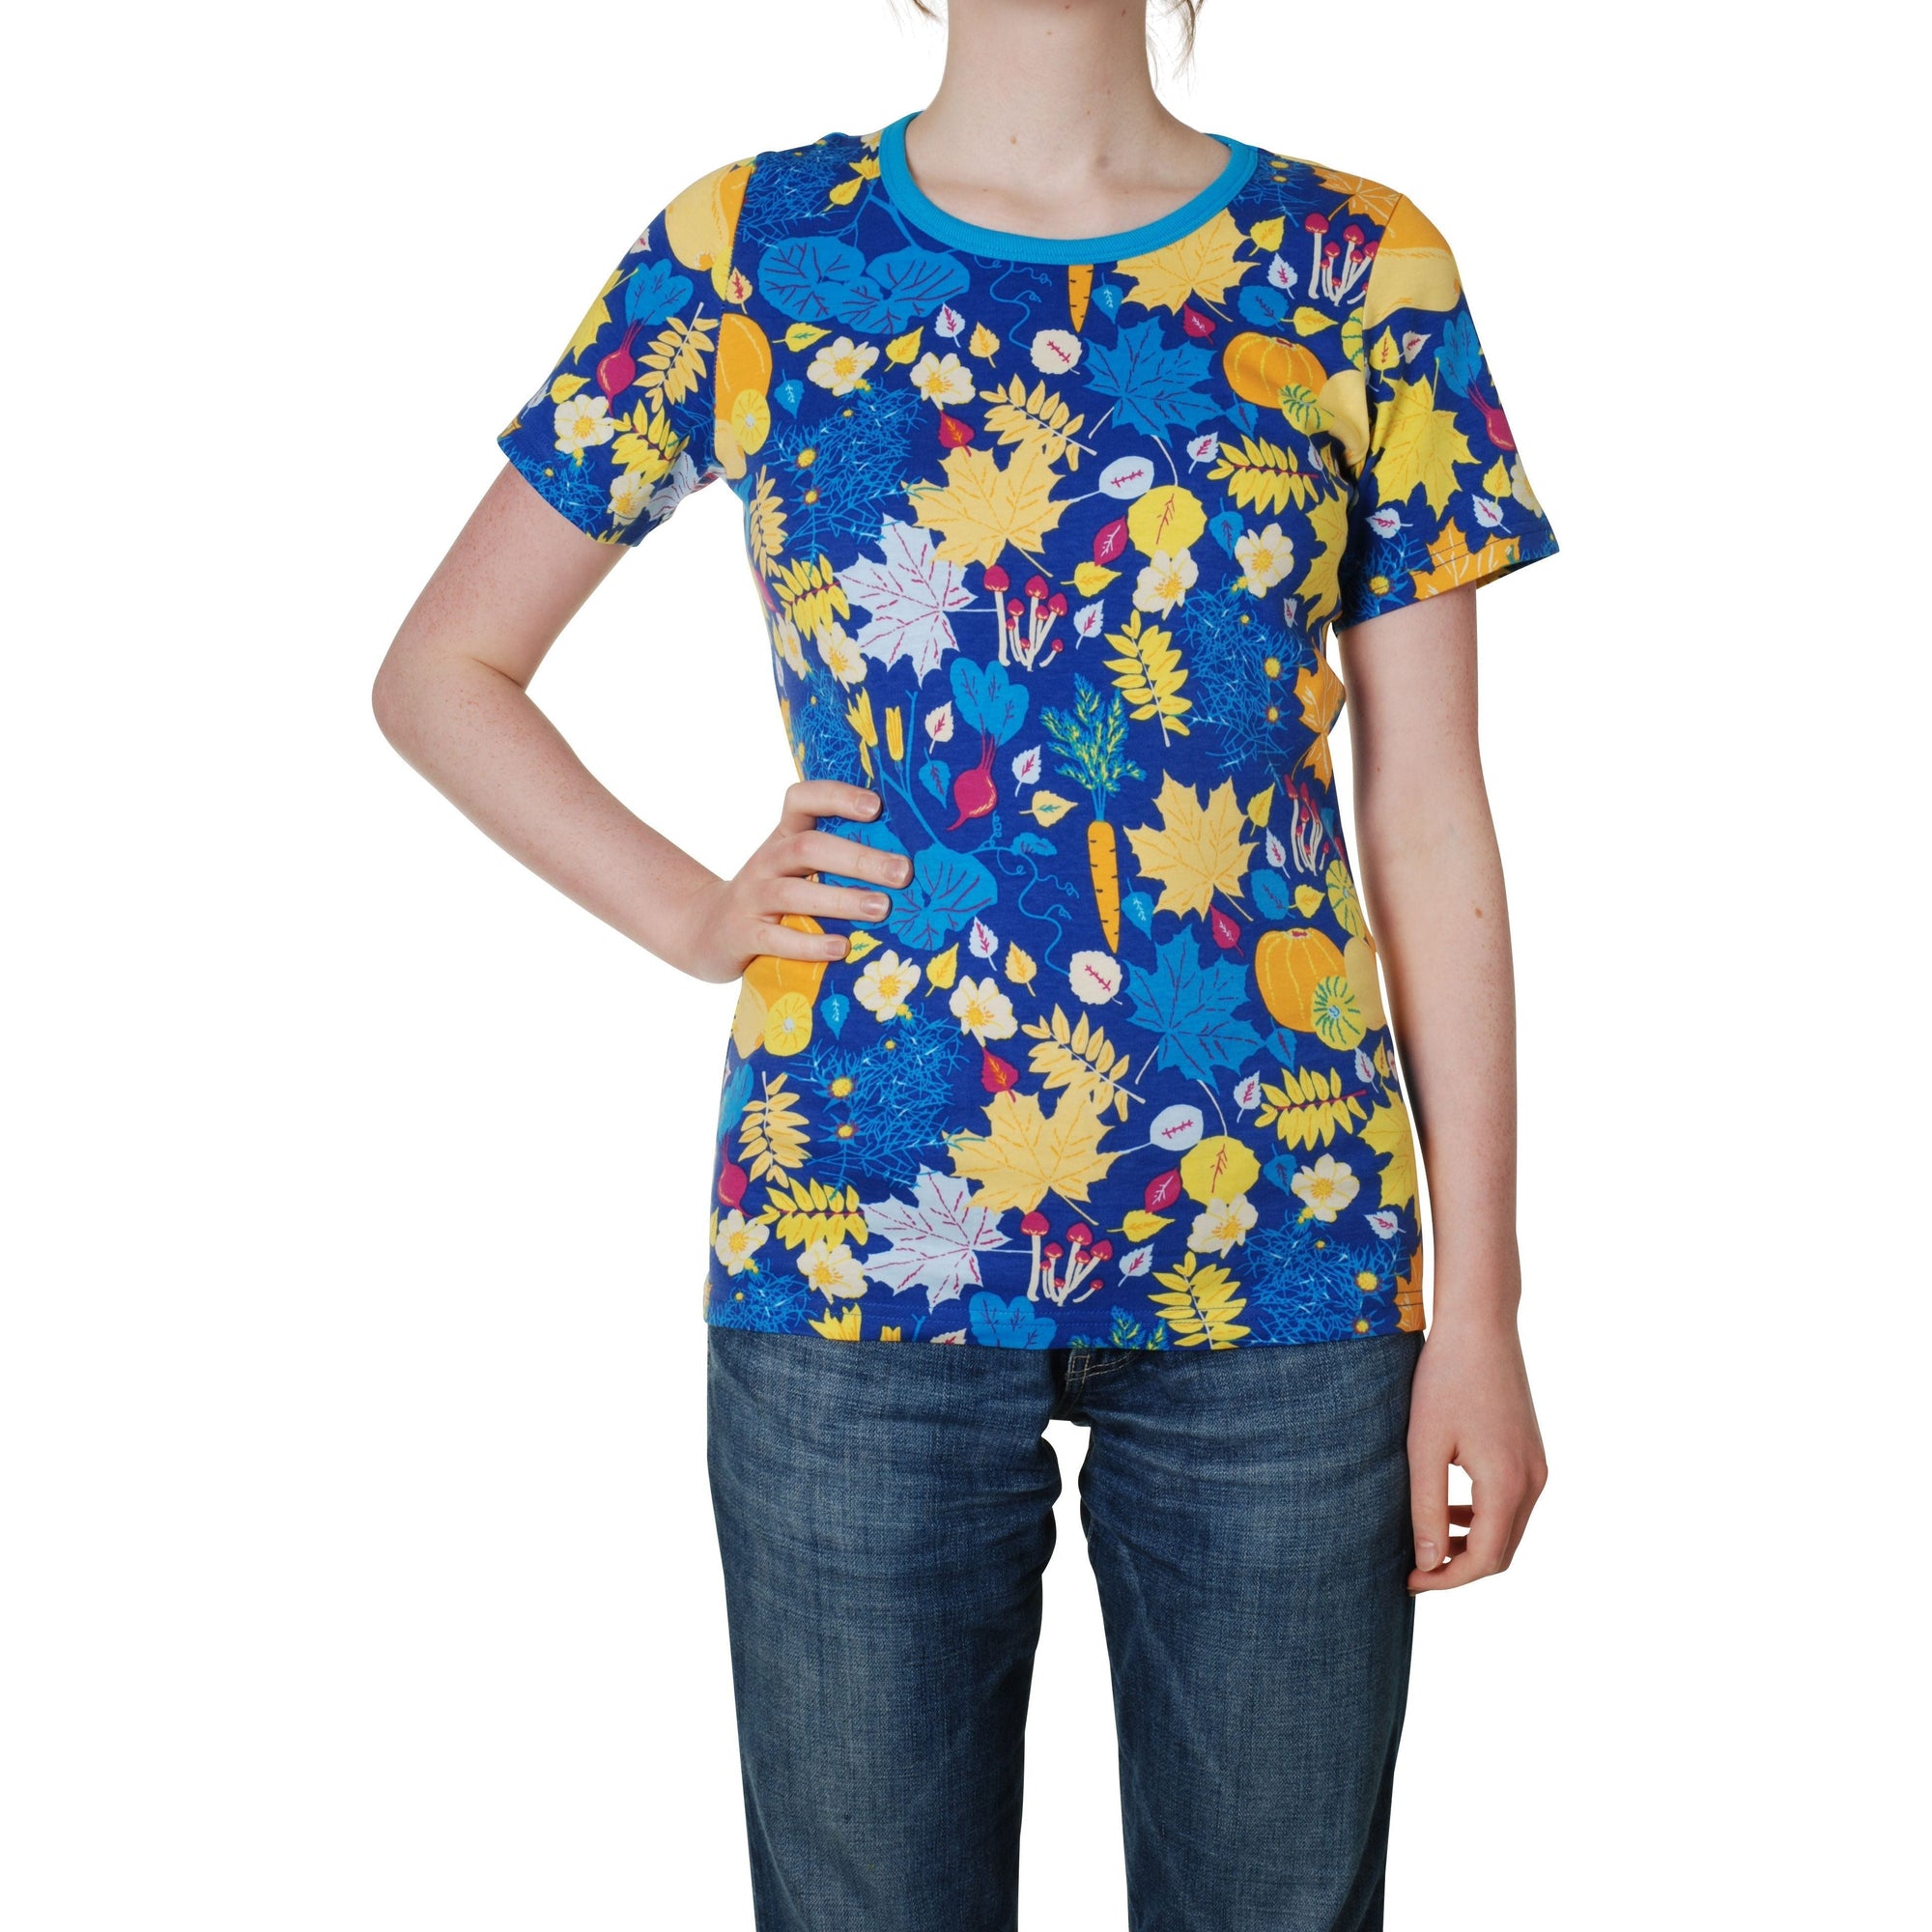 Adult's Fall Flowers - Blue Short Sleeve Shirt - 2 Left Size S & 4XL-Duns Sweden-Modern Rascals